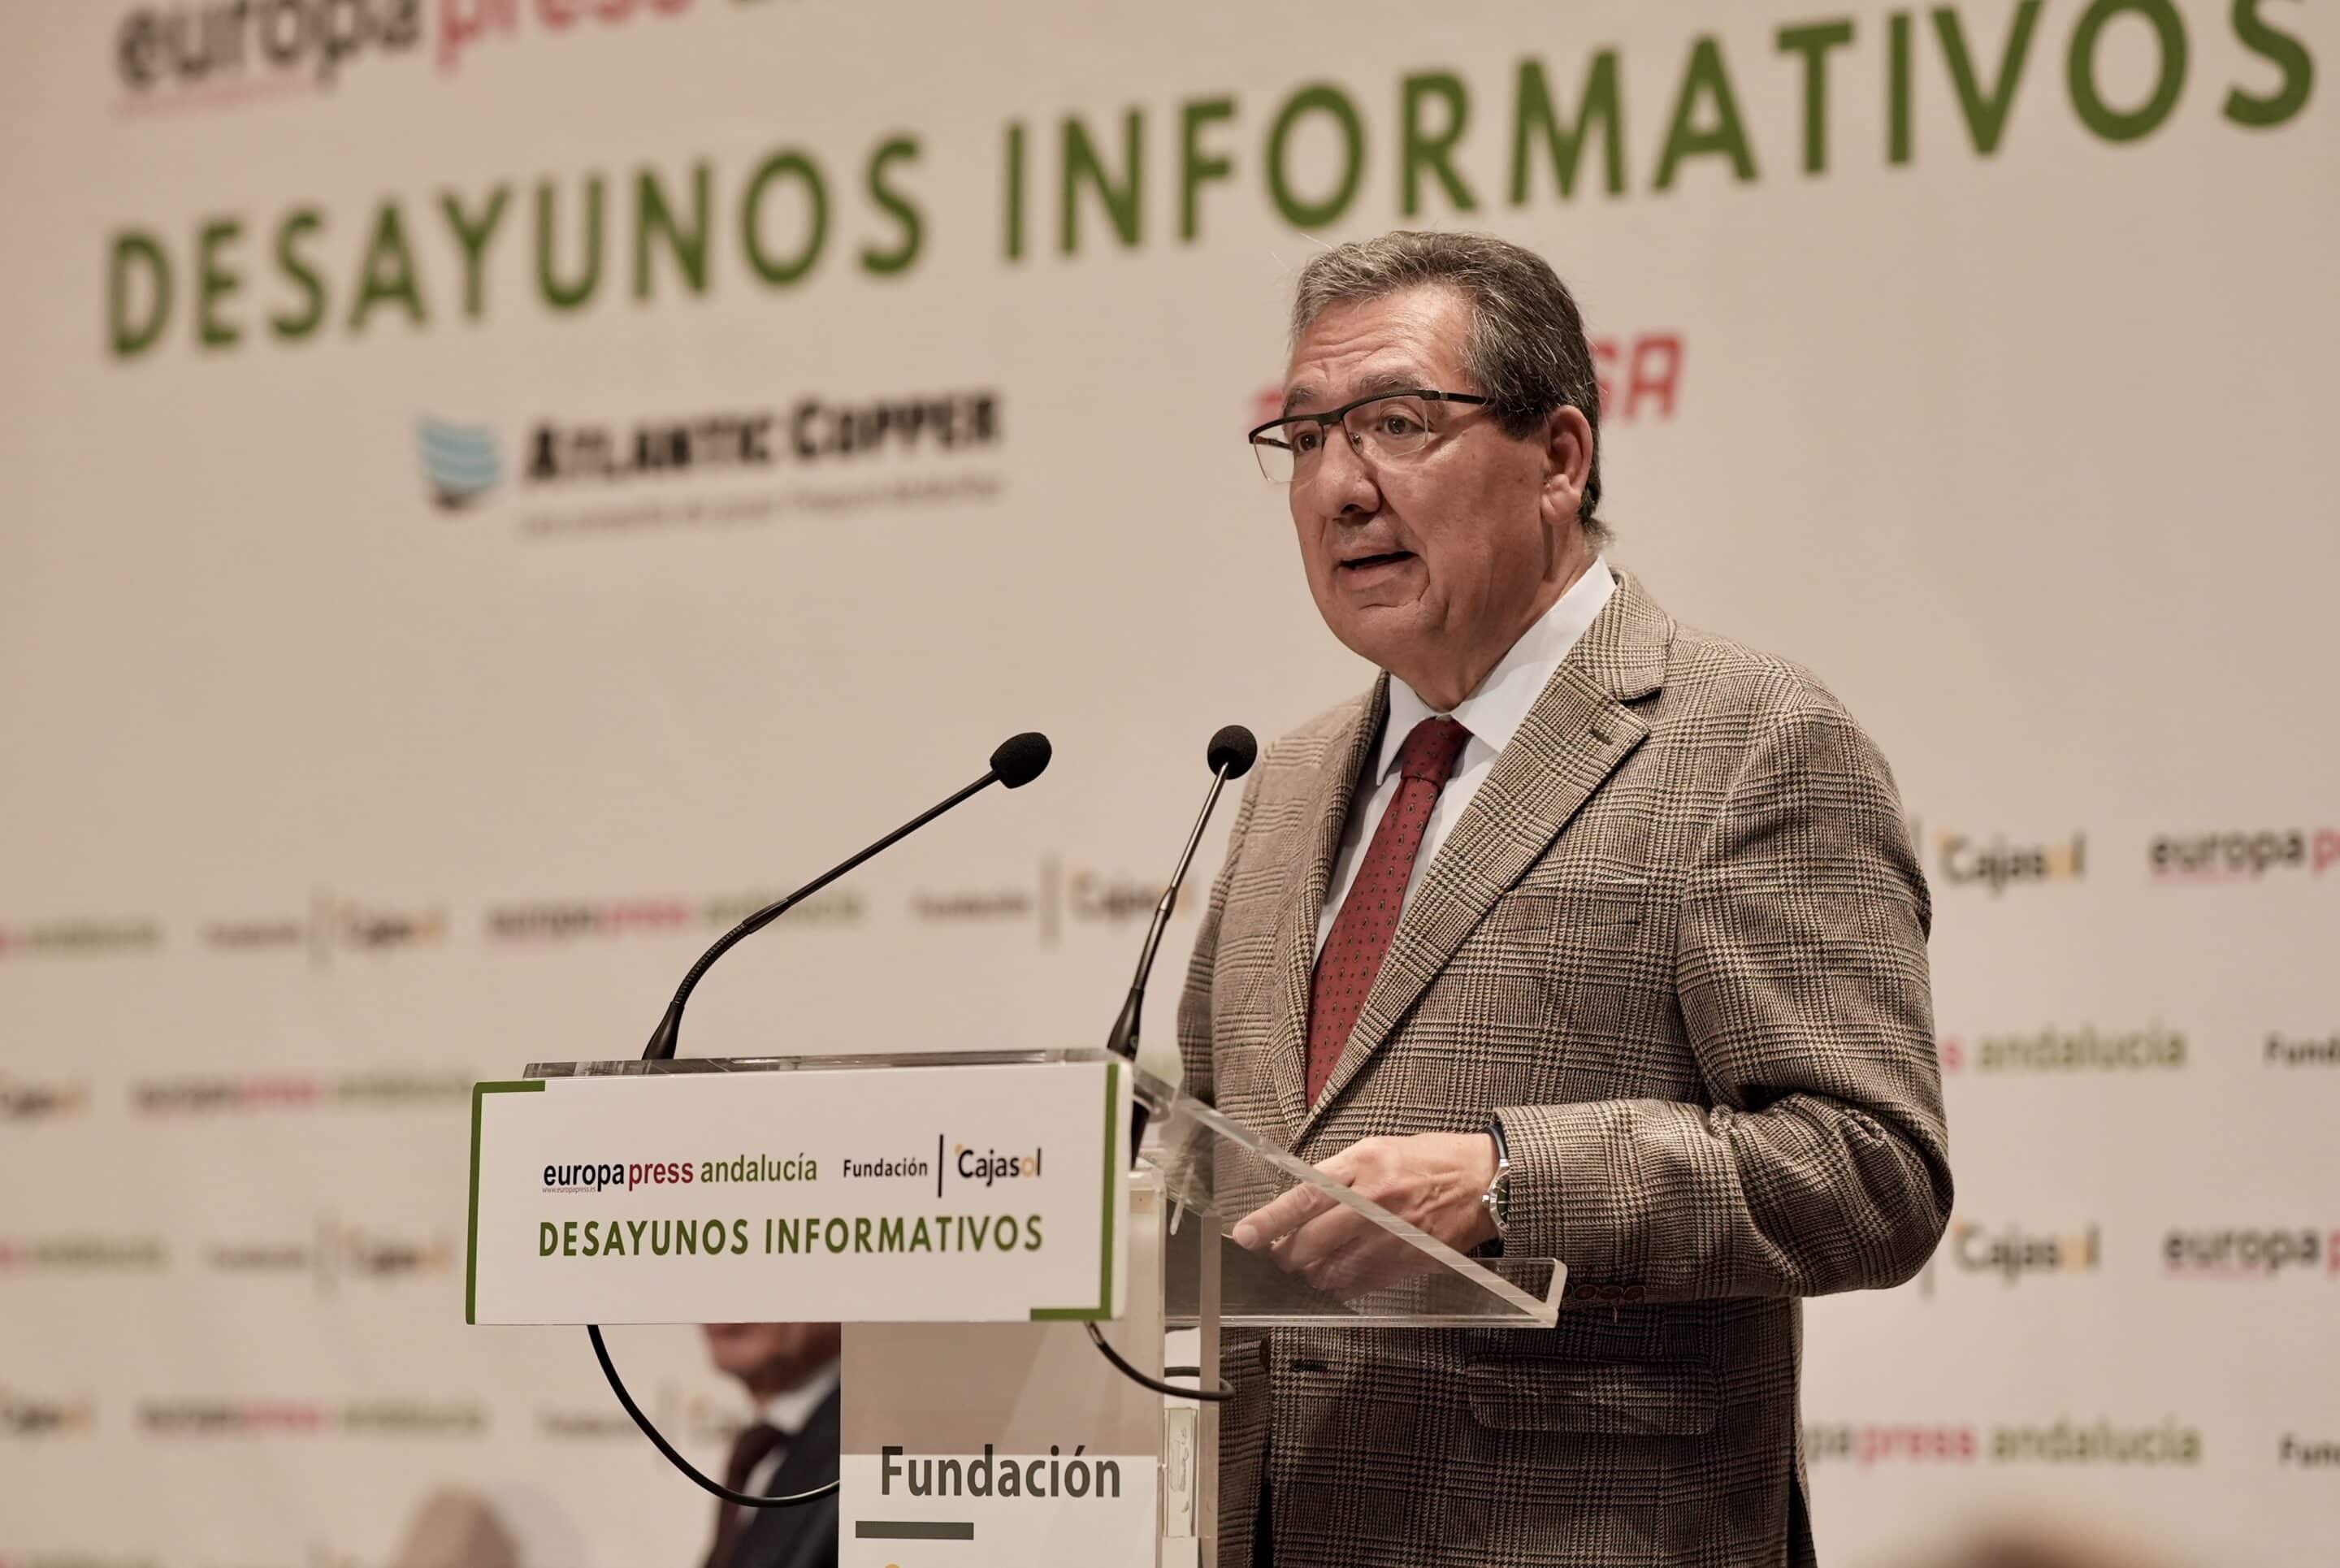 Javier Fernández de los Ríos y Antonio Pulido en los Desayunos Informativos en Cajasol